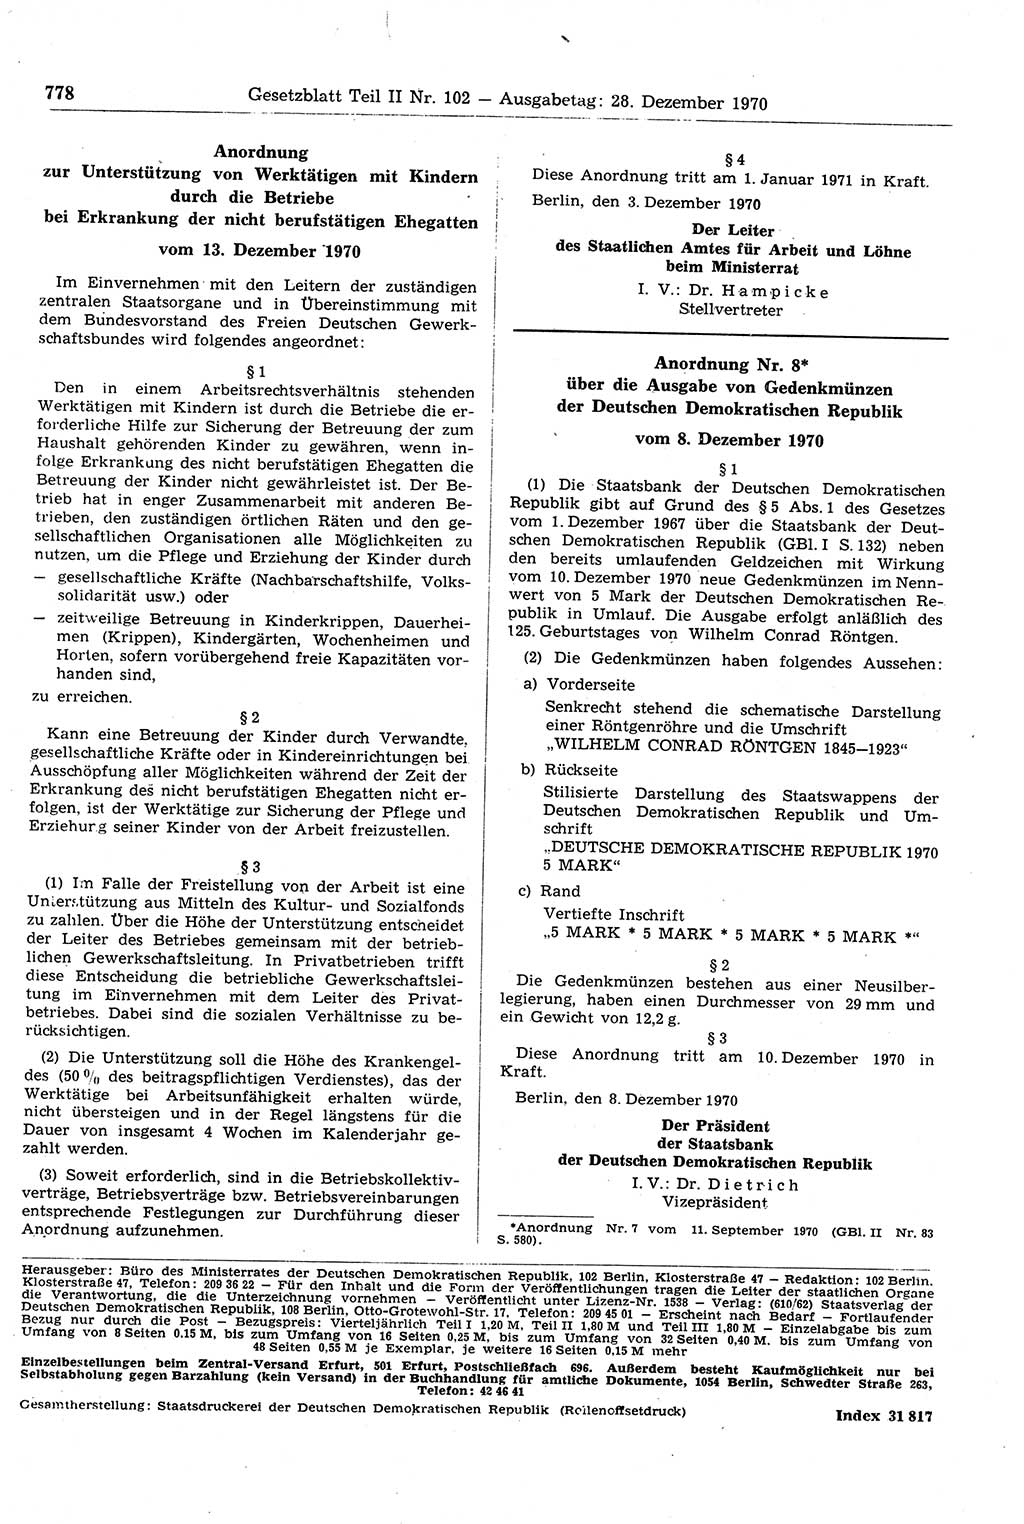 Gesetzblatt (GBl.) der Deutschen Demokratischen Republik (DDR) Teil ⅠⅠ 1970, Seite 778 (GBl. DDR ⅠⅠ 1970, S. 778)